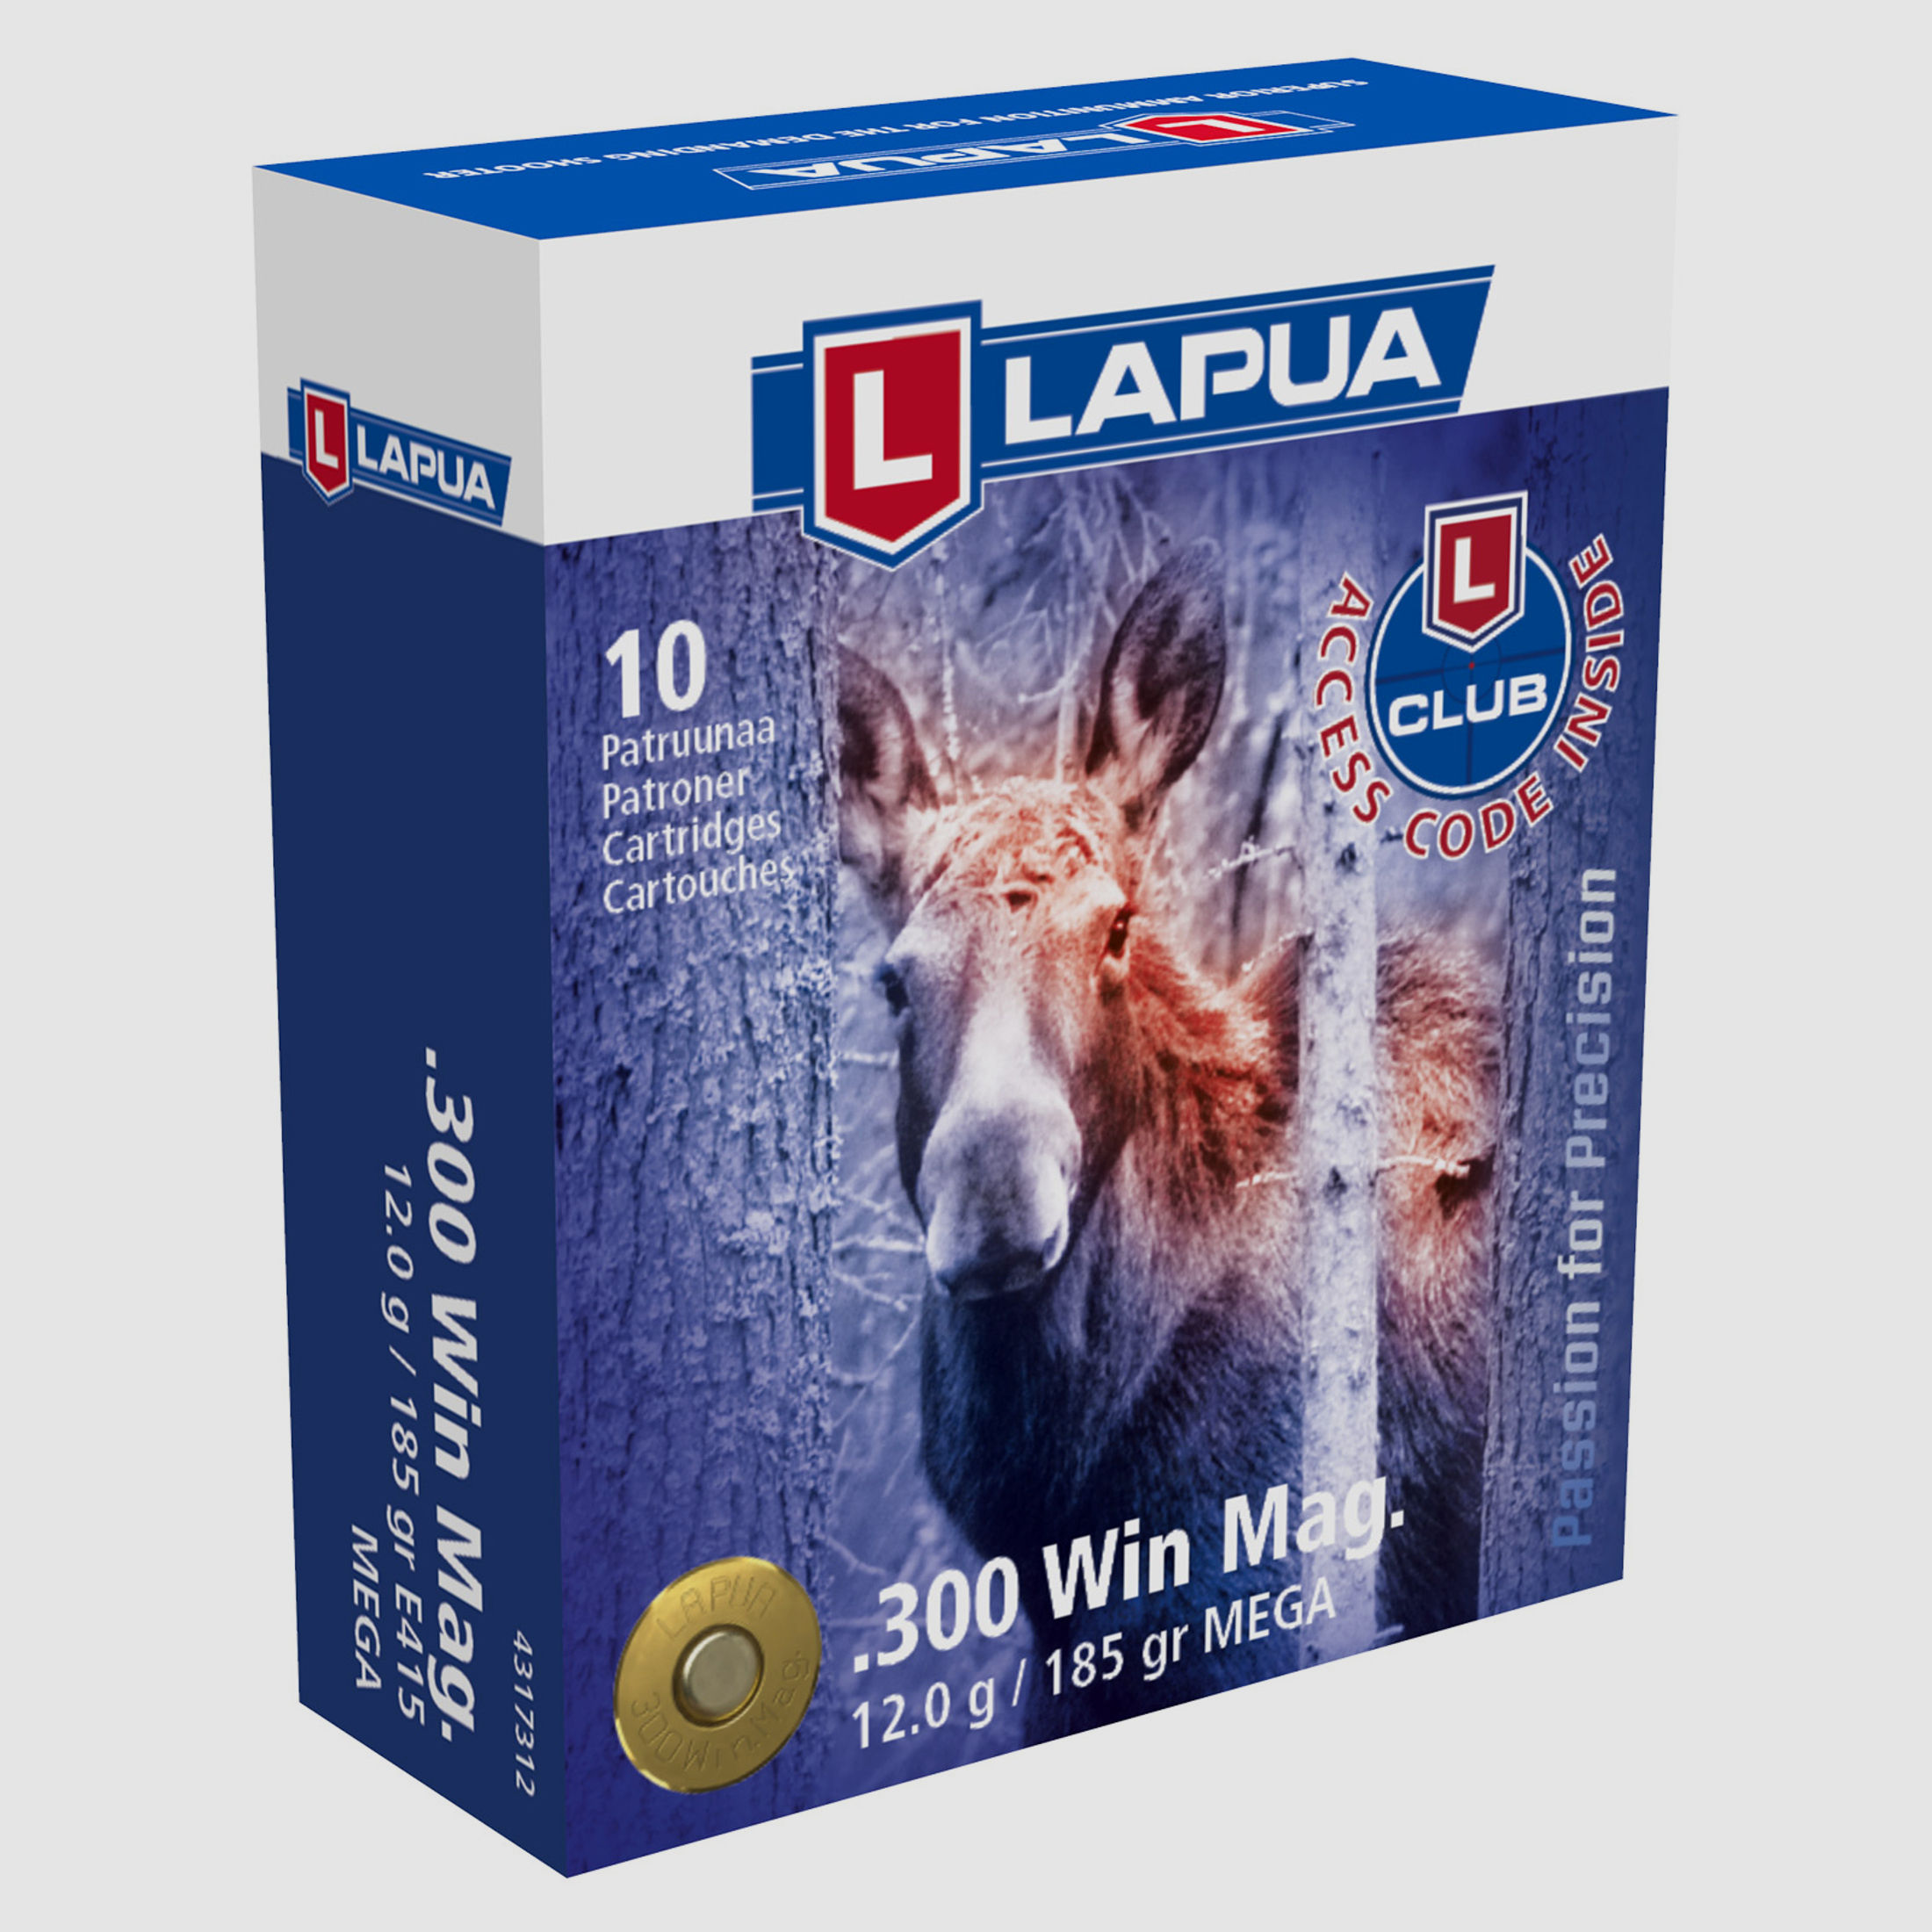 LAPUA .300 Win Mag Mega 12g / 185grs